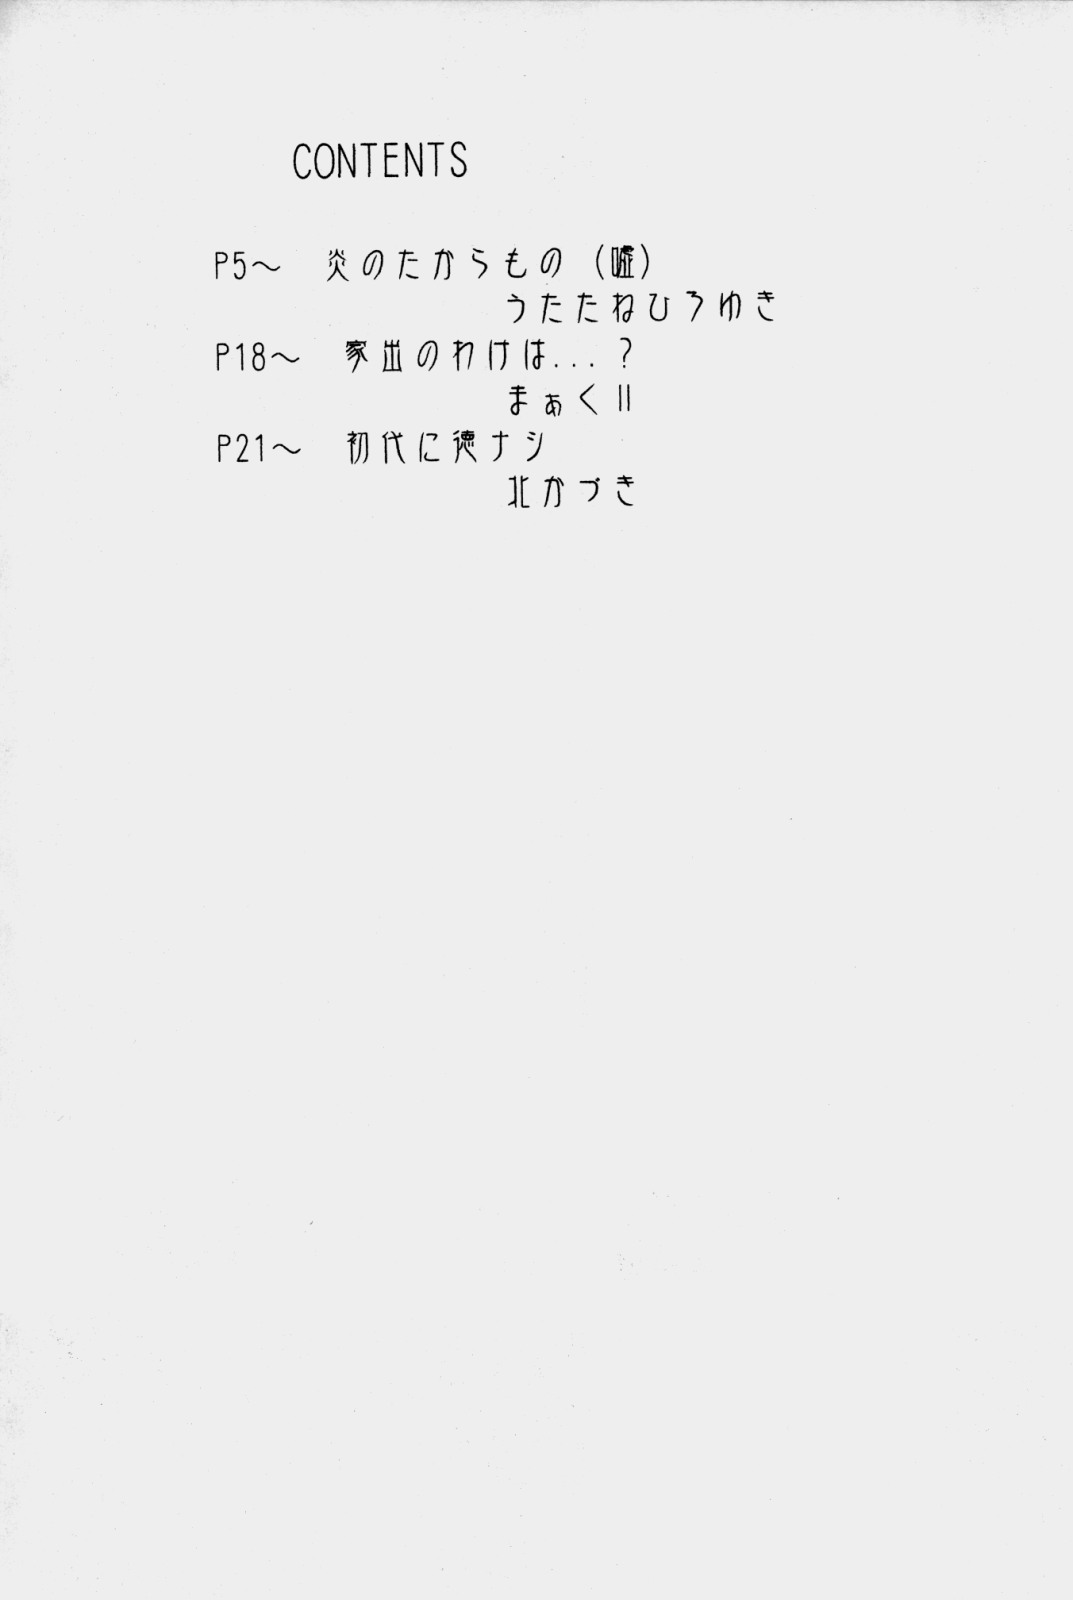 (CR33)[UROBOROS (Utatane Hiroyuki)] out of order (Gad Guard) (CR33)[UROBOROS (うたたねひろゆき)] out of order (ガドガード)